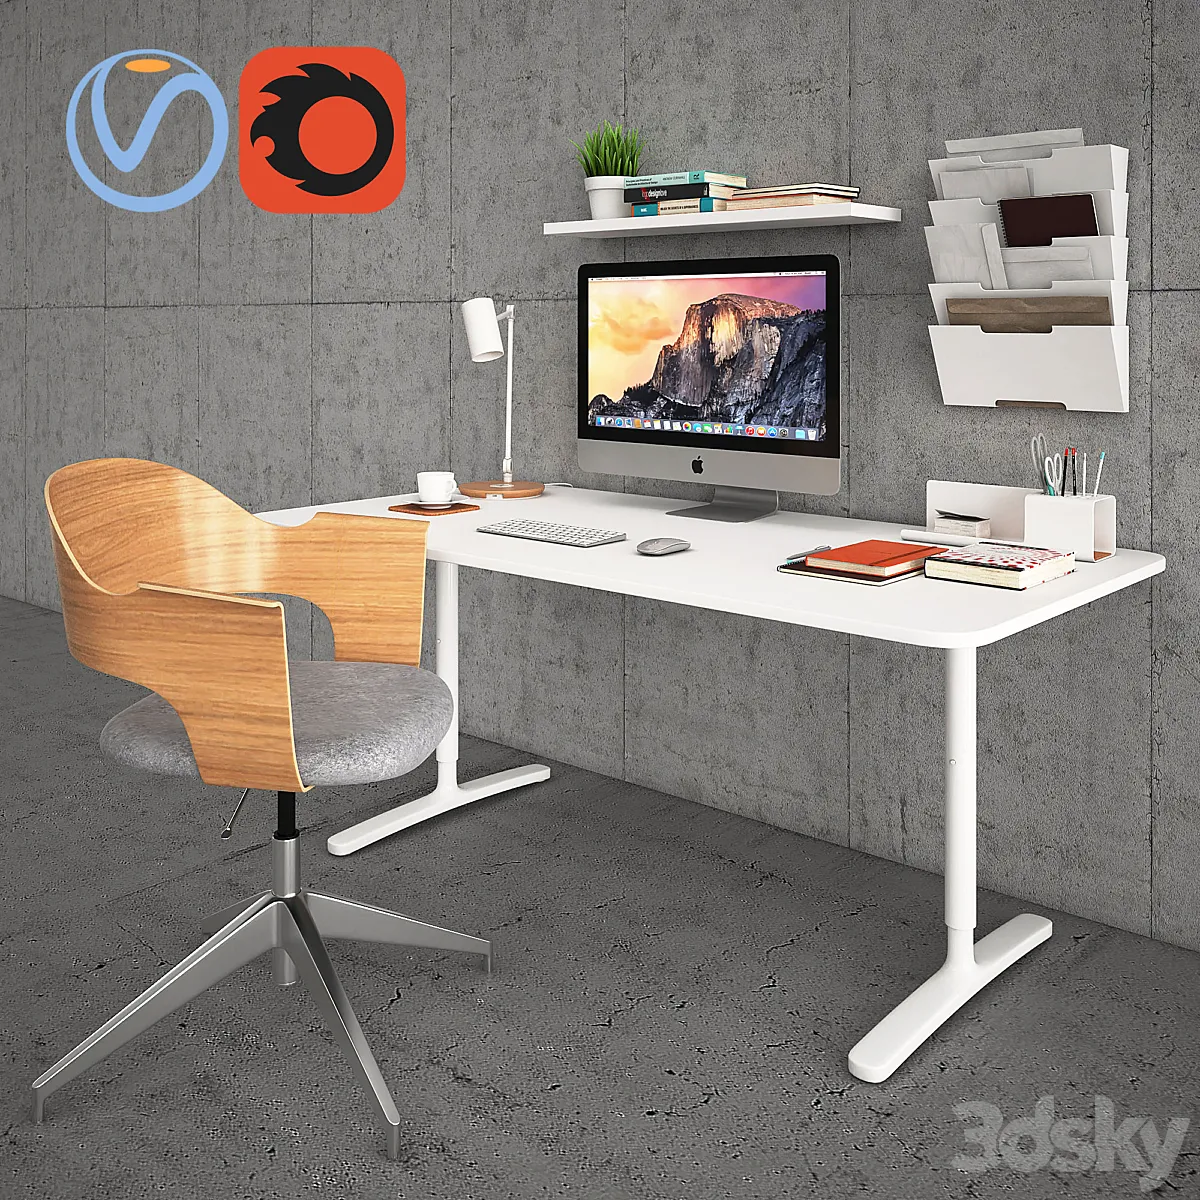 مدل سه بعدی میز کامپیوتر تری دی مکس + ویری Bekant Desk with Fjallberget